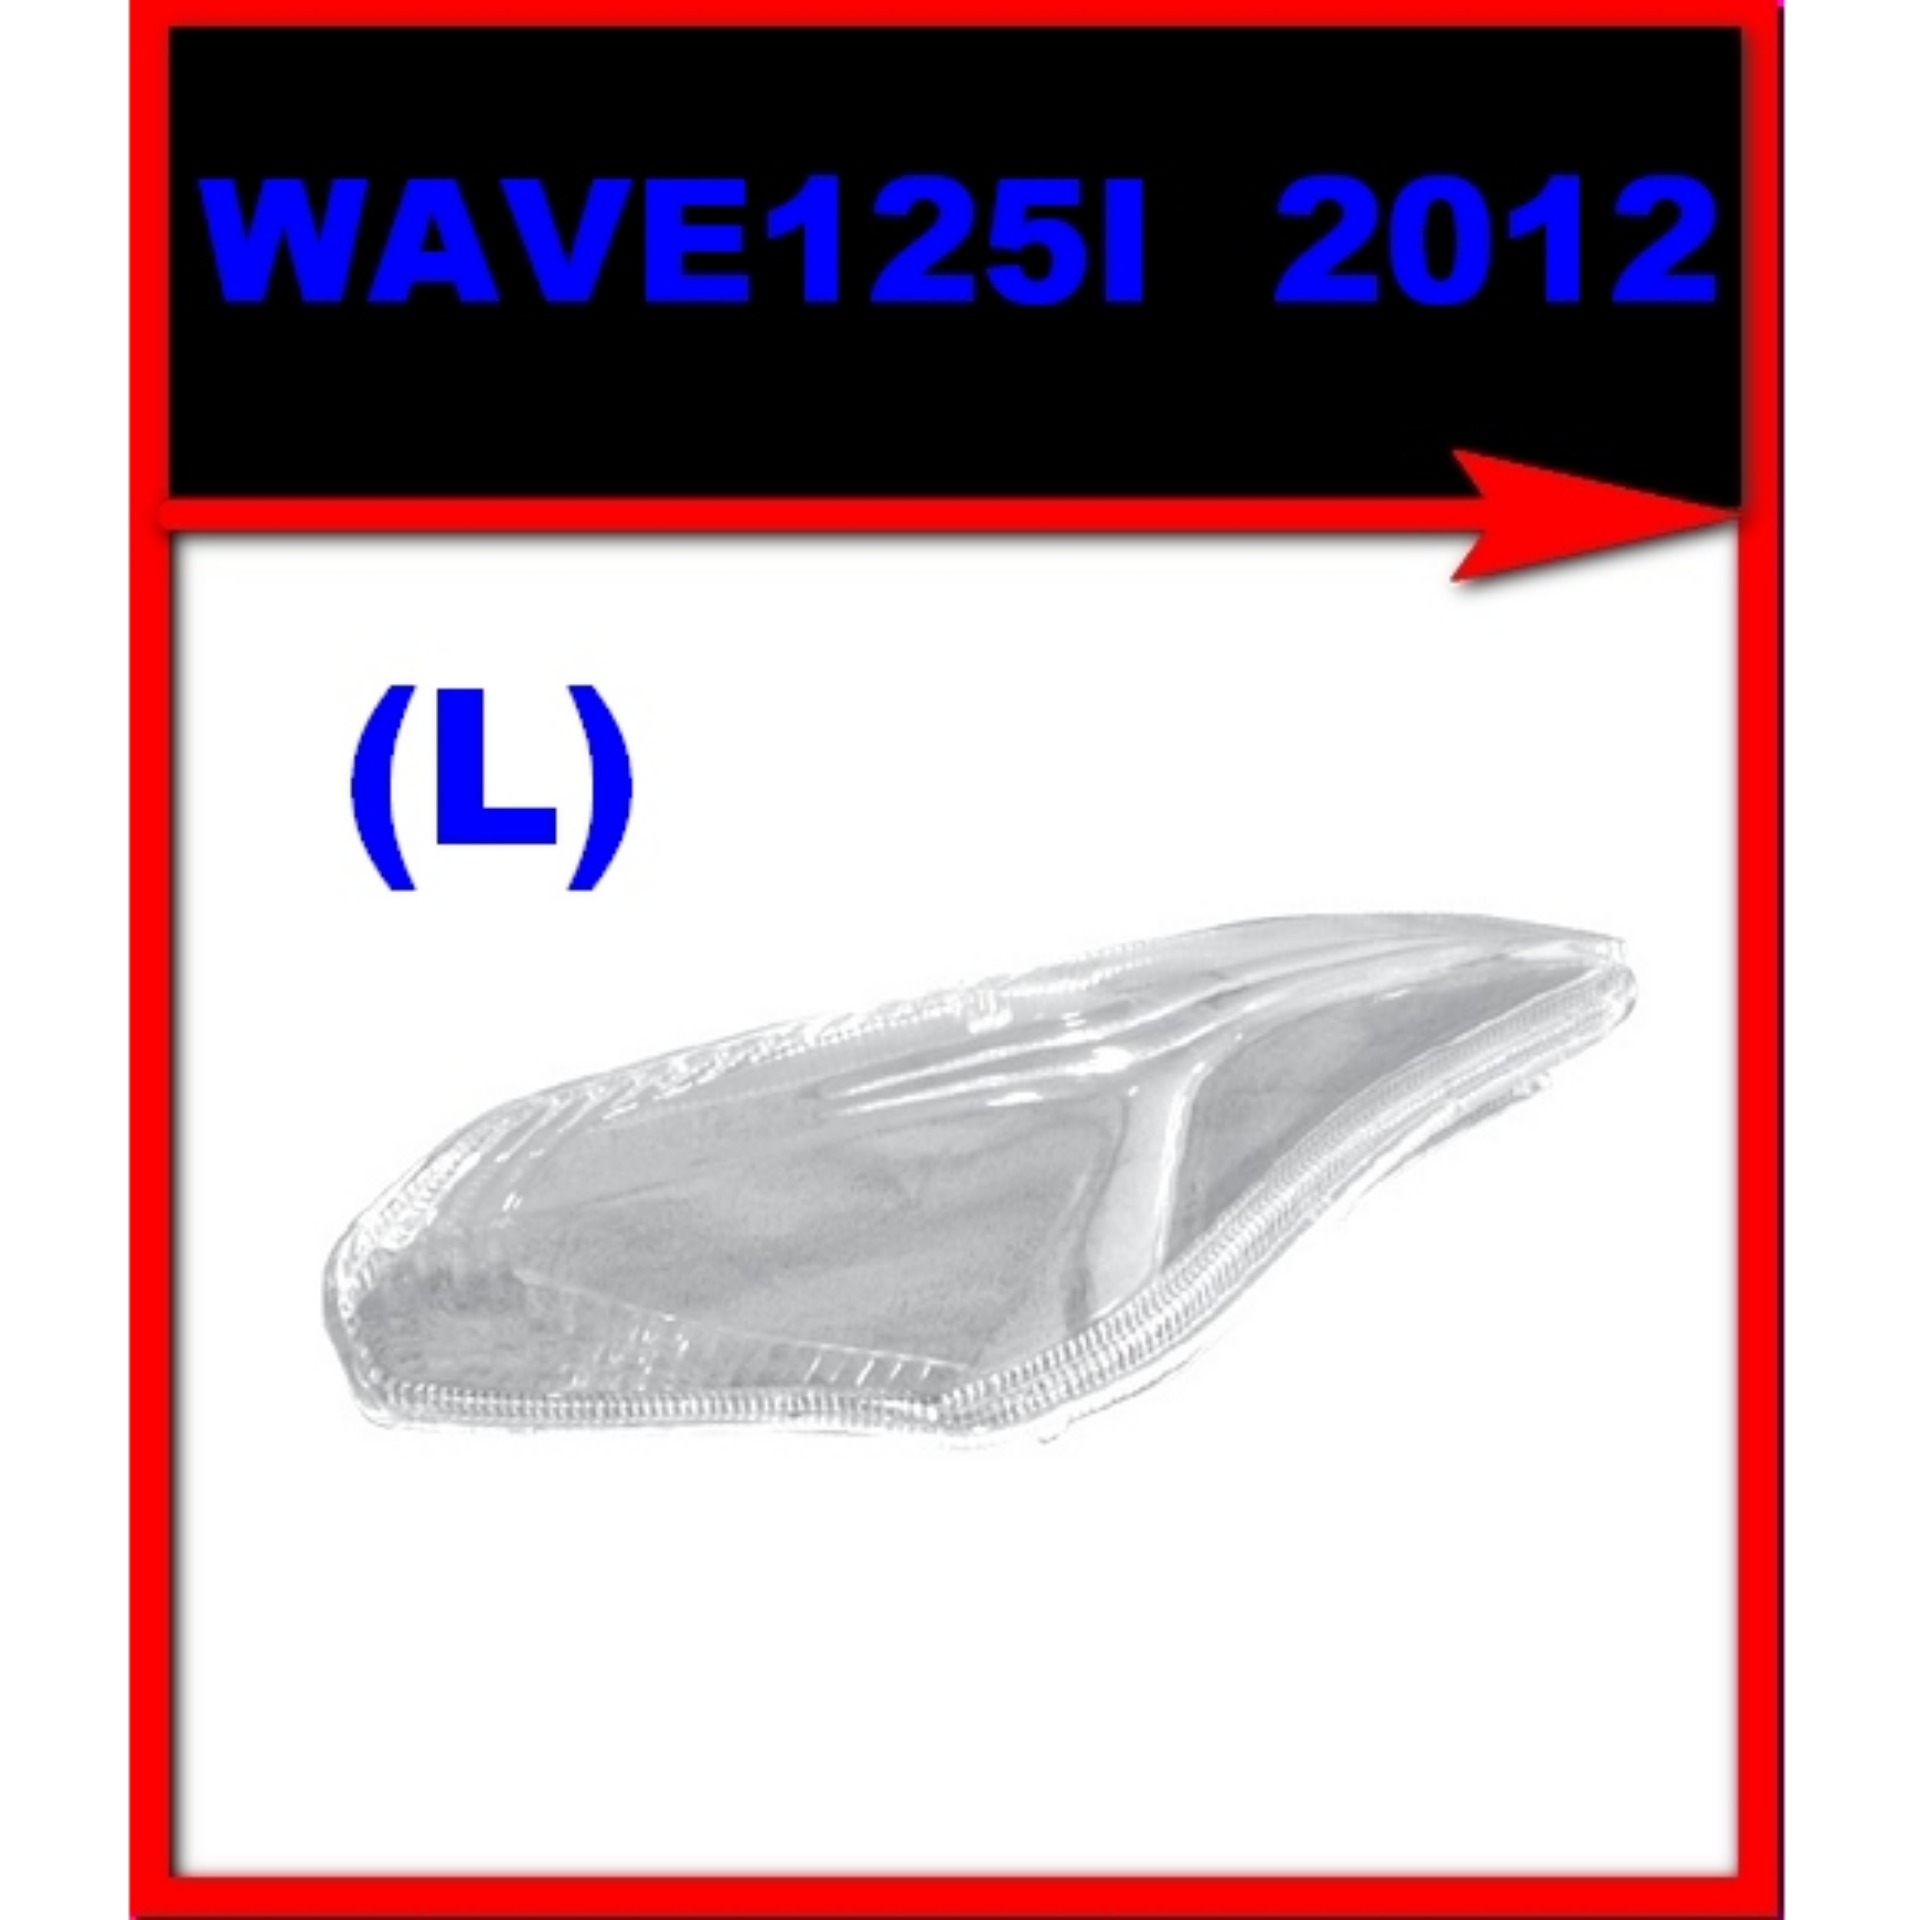 ฝาไฟเลี้ยวหน้า HONDA WAVE125i ปี2012 (ปลาวาฬ) ข้างซ้าย(L)